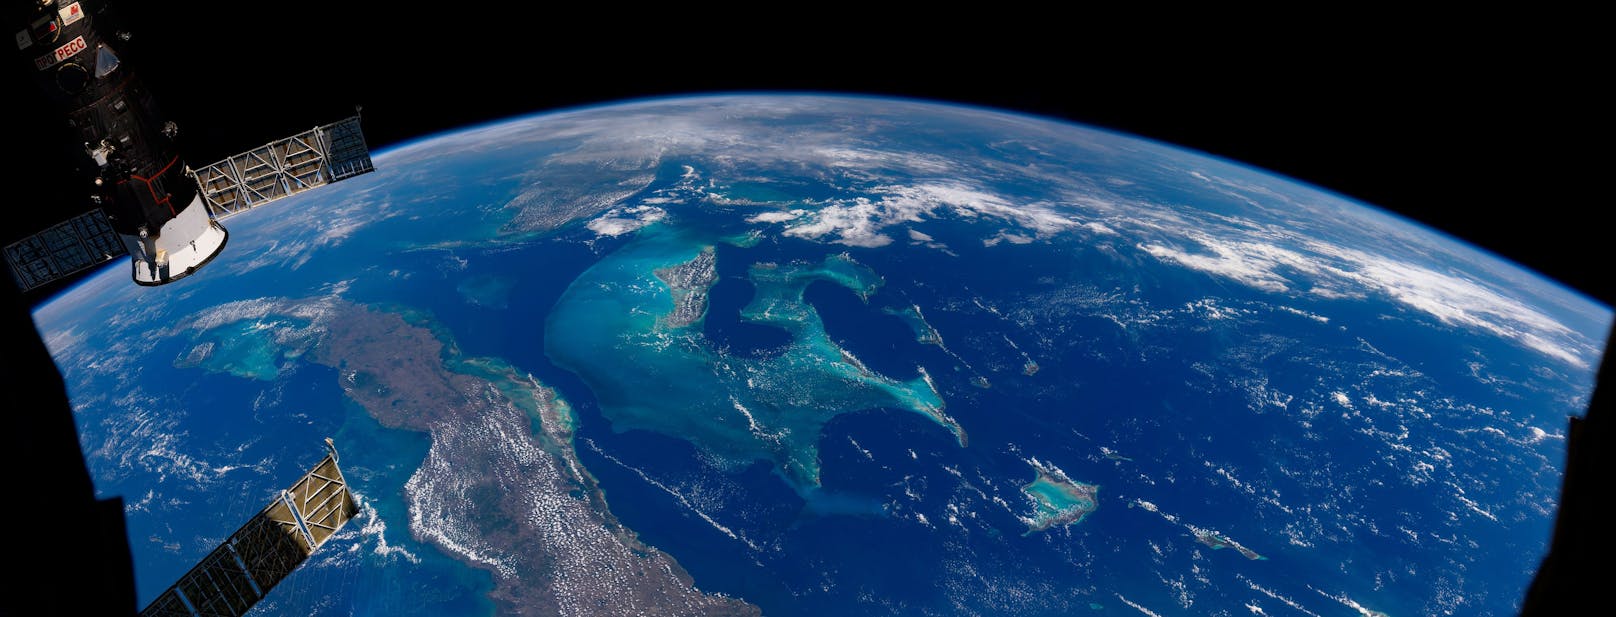 Die Bahamas von der Internationalen Raumstation (ISS) aus aufgenommen im September 2022 von ESA-Astronaut Thomas Pesquet.